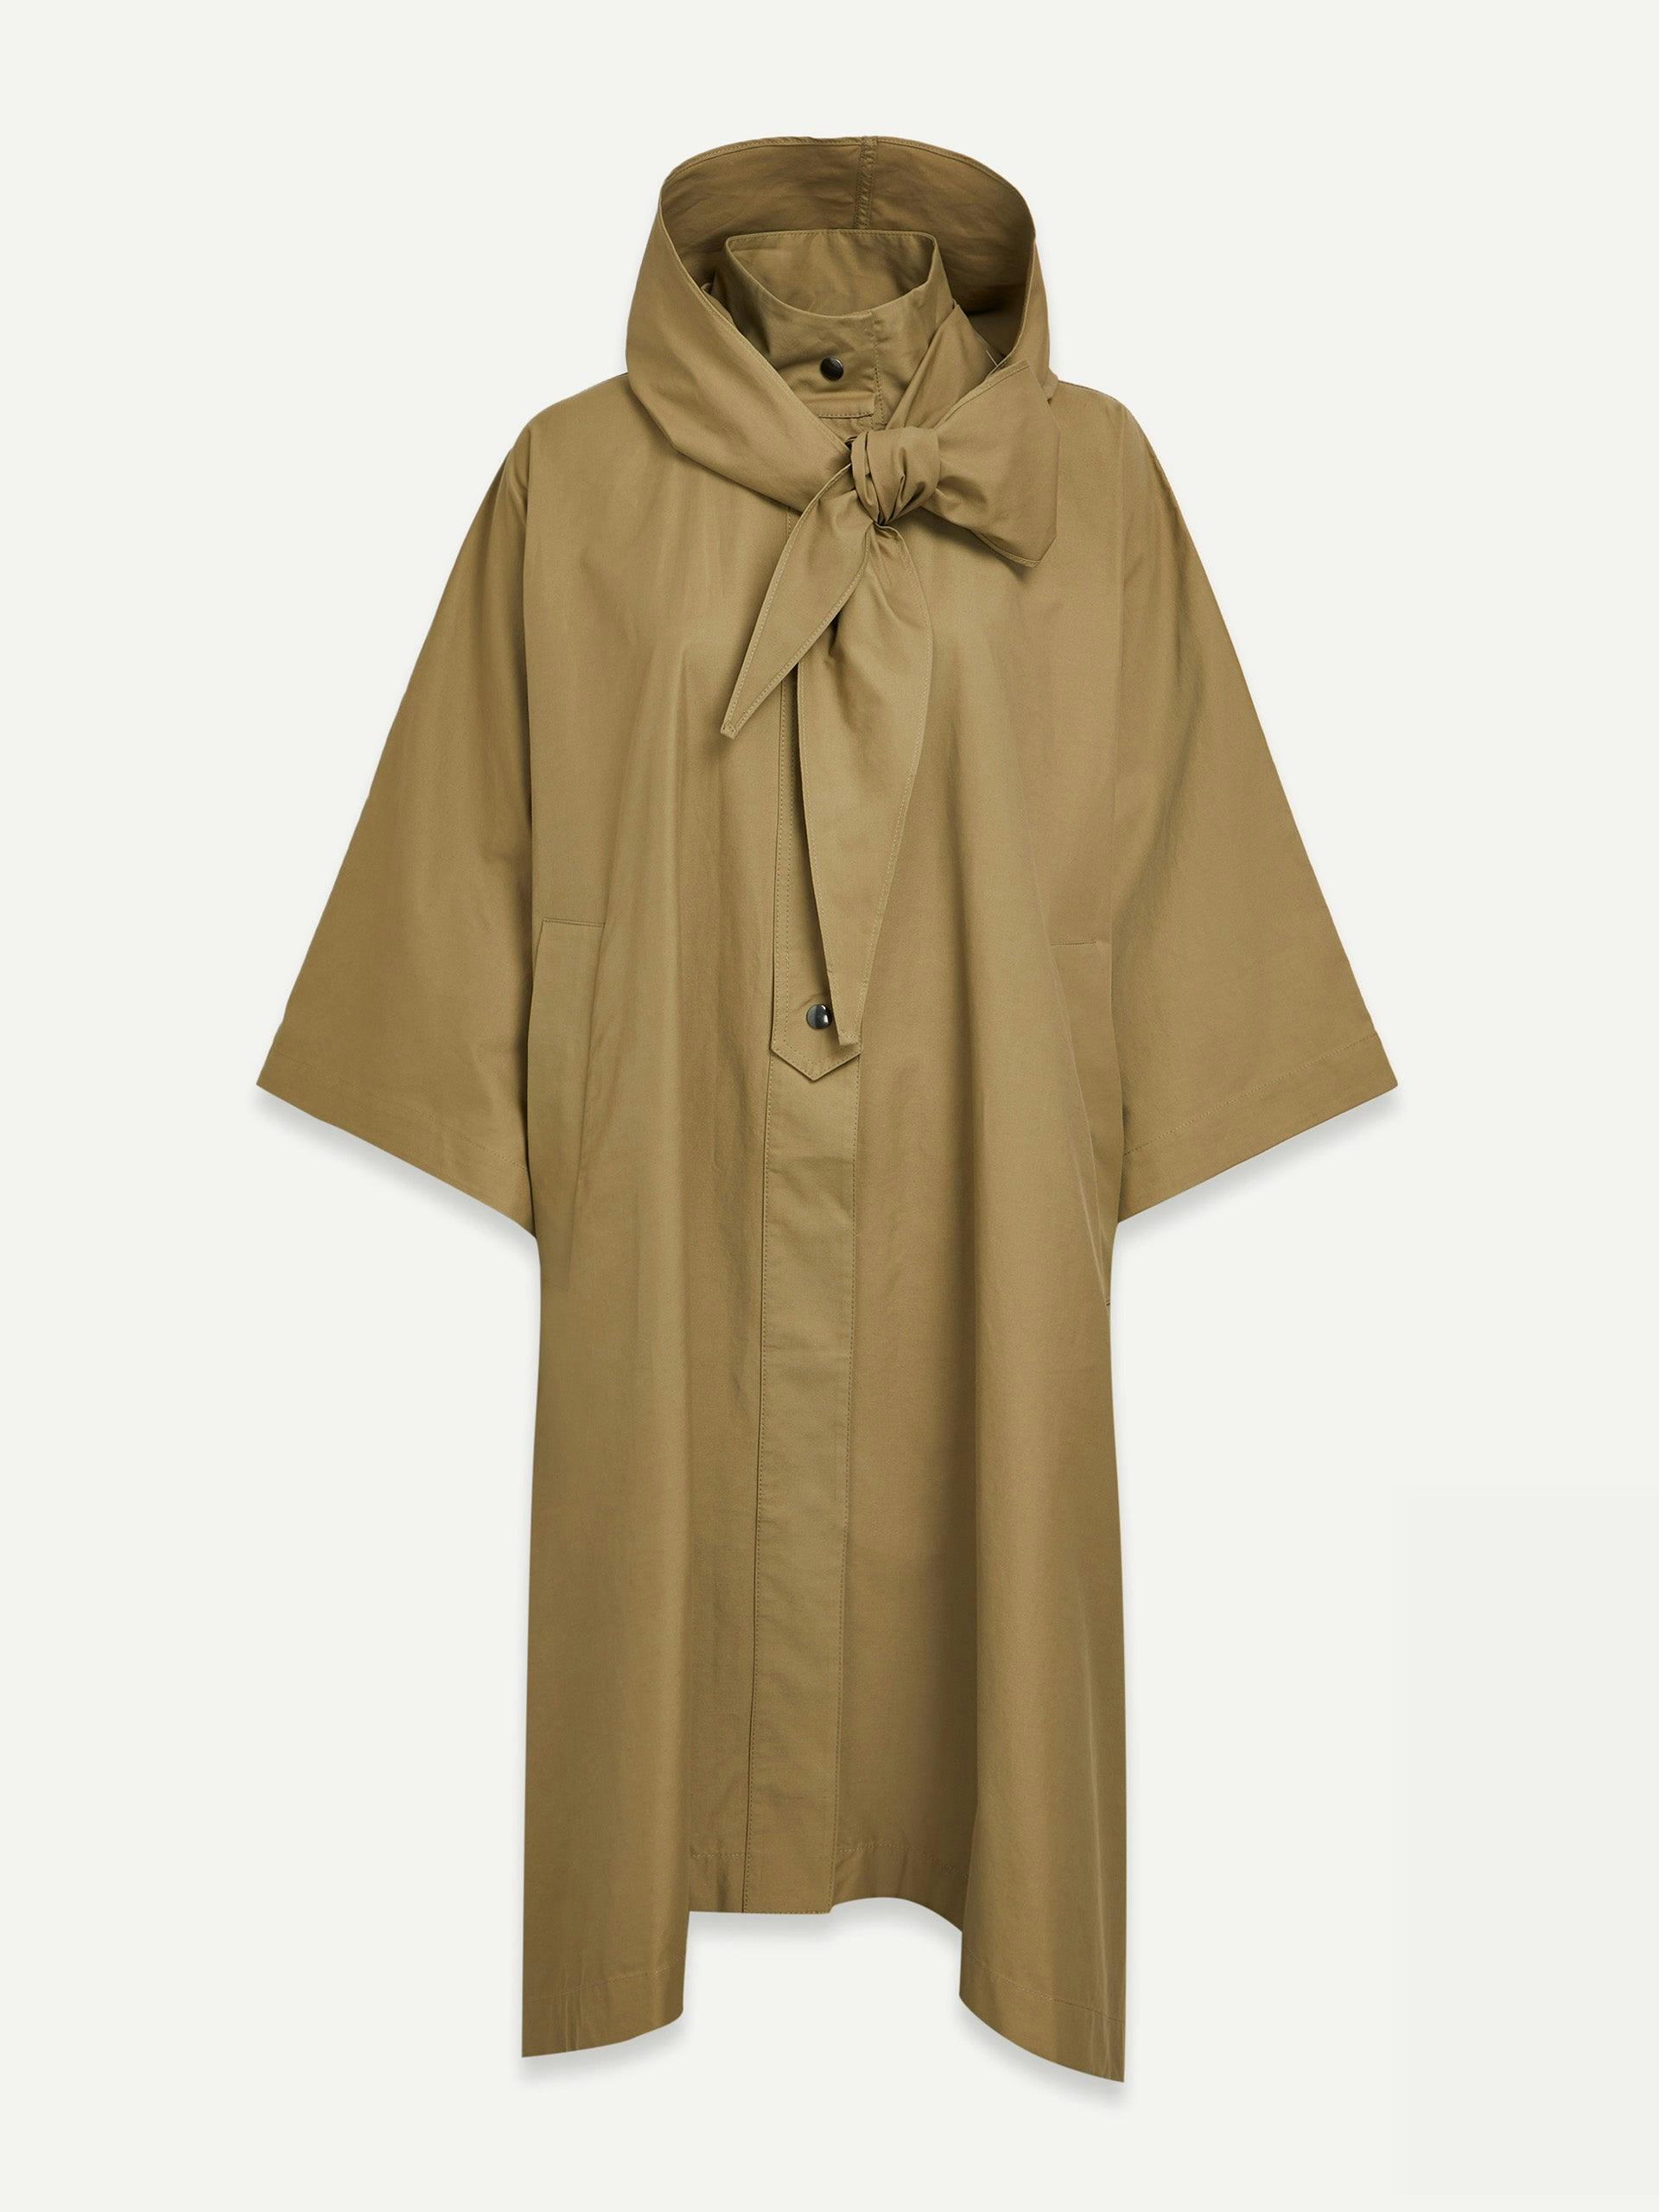 Mansel brown coat